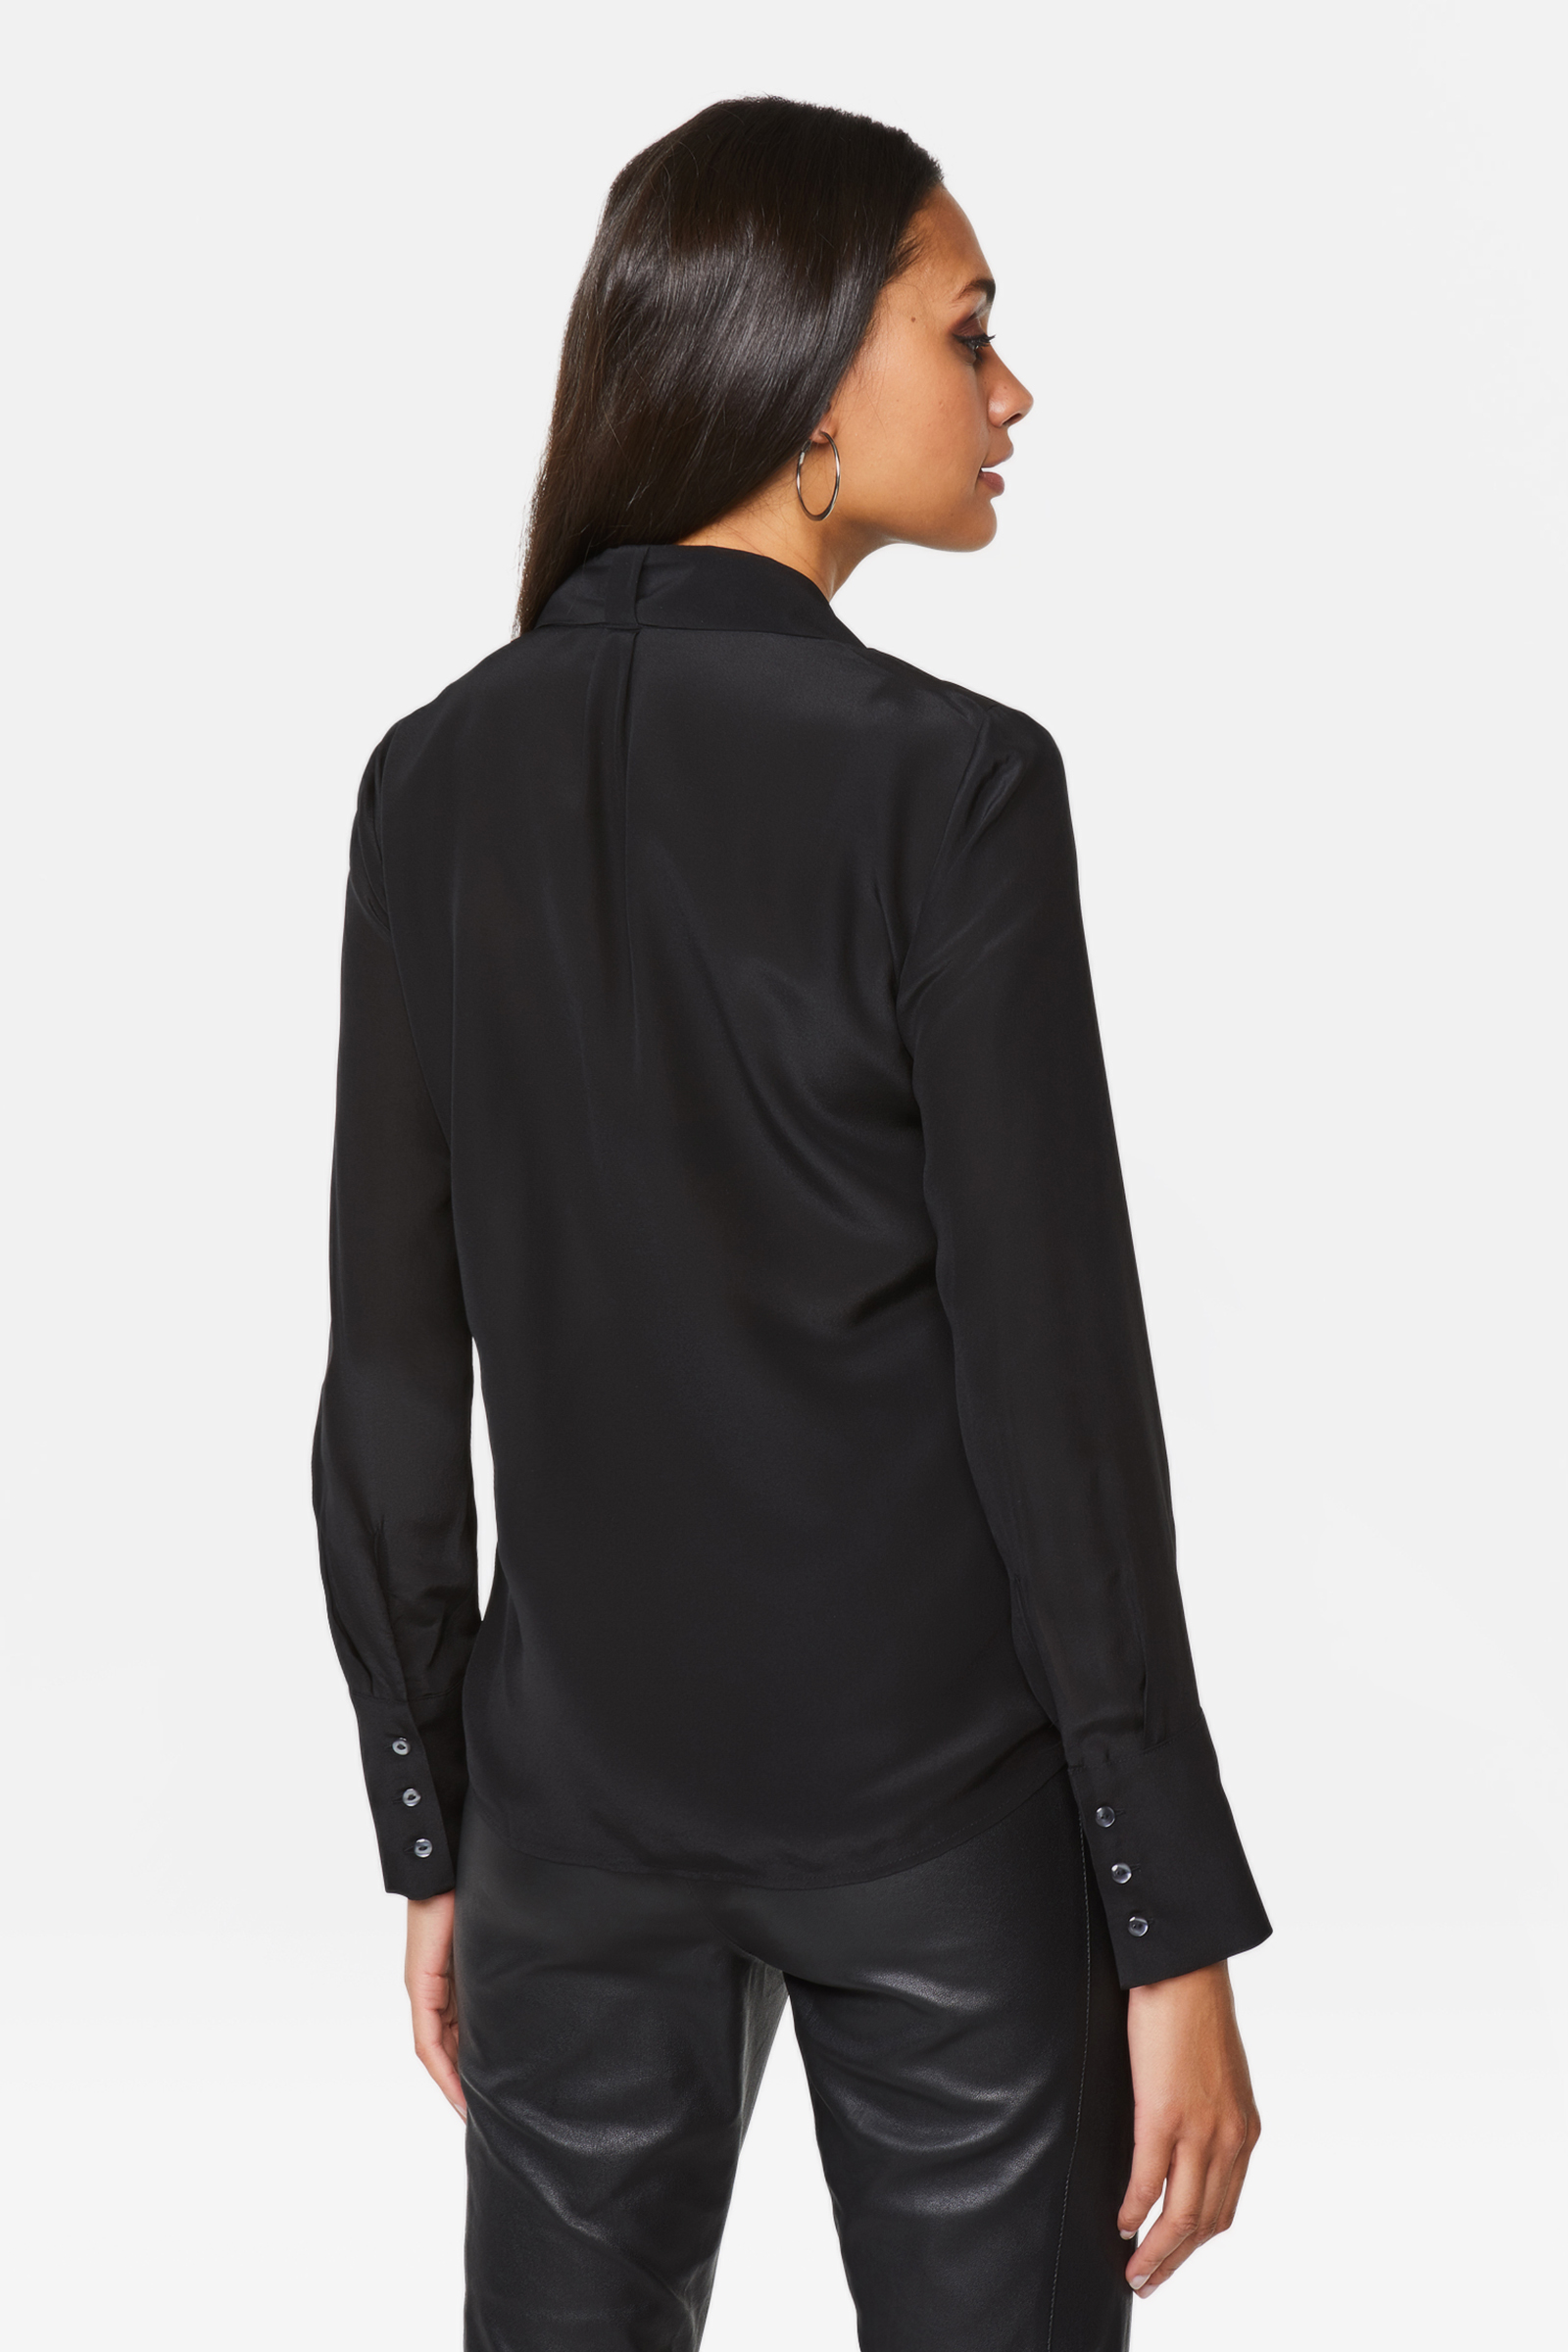 DANIELS Zijden blouse zwart zakelijke stijl Mode Blouses Zijden blouses 